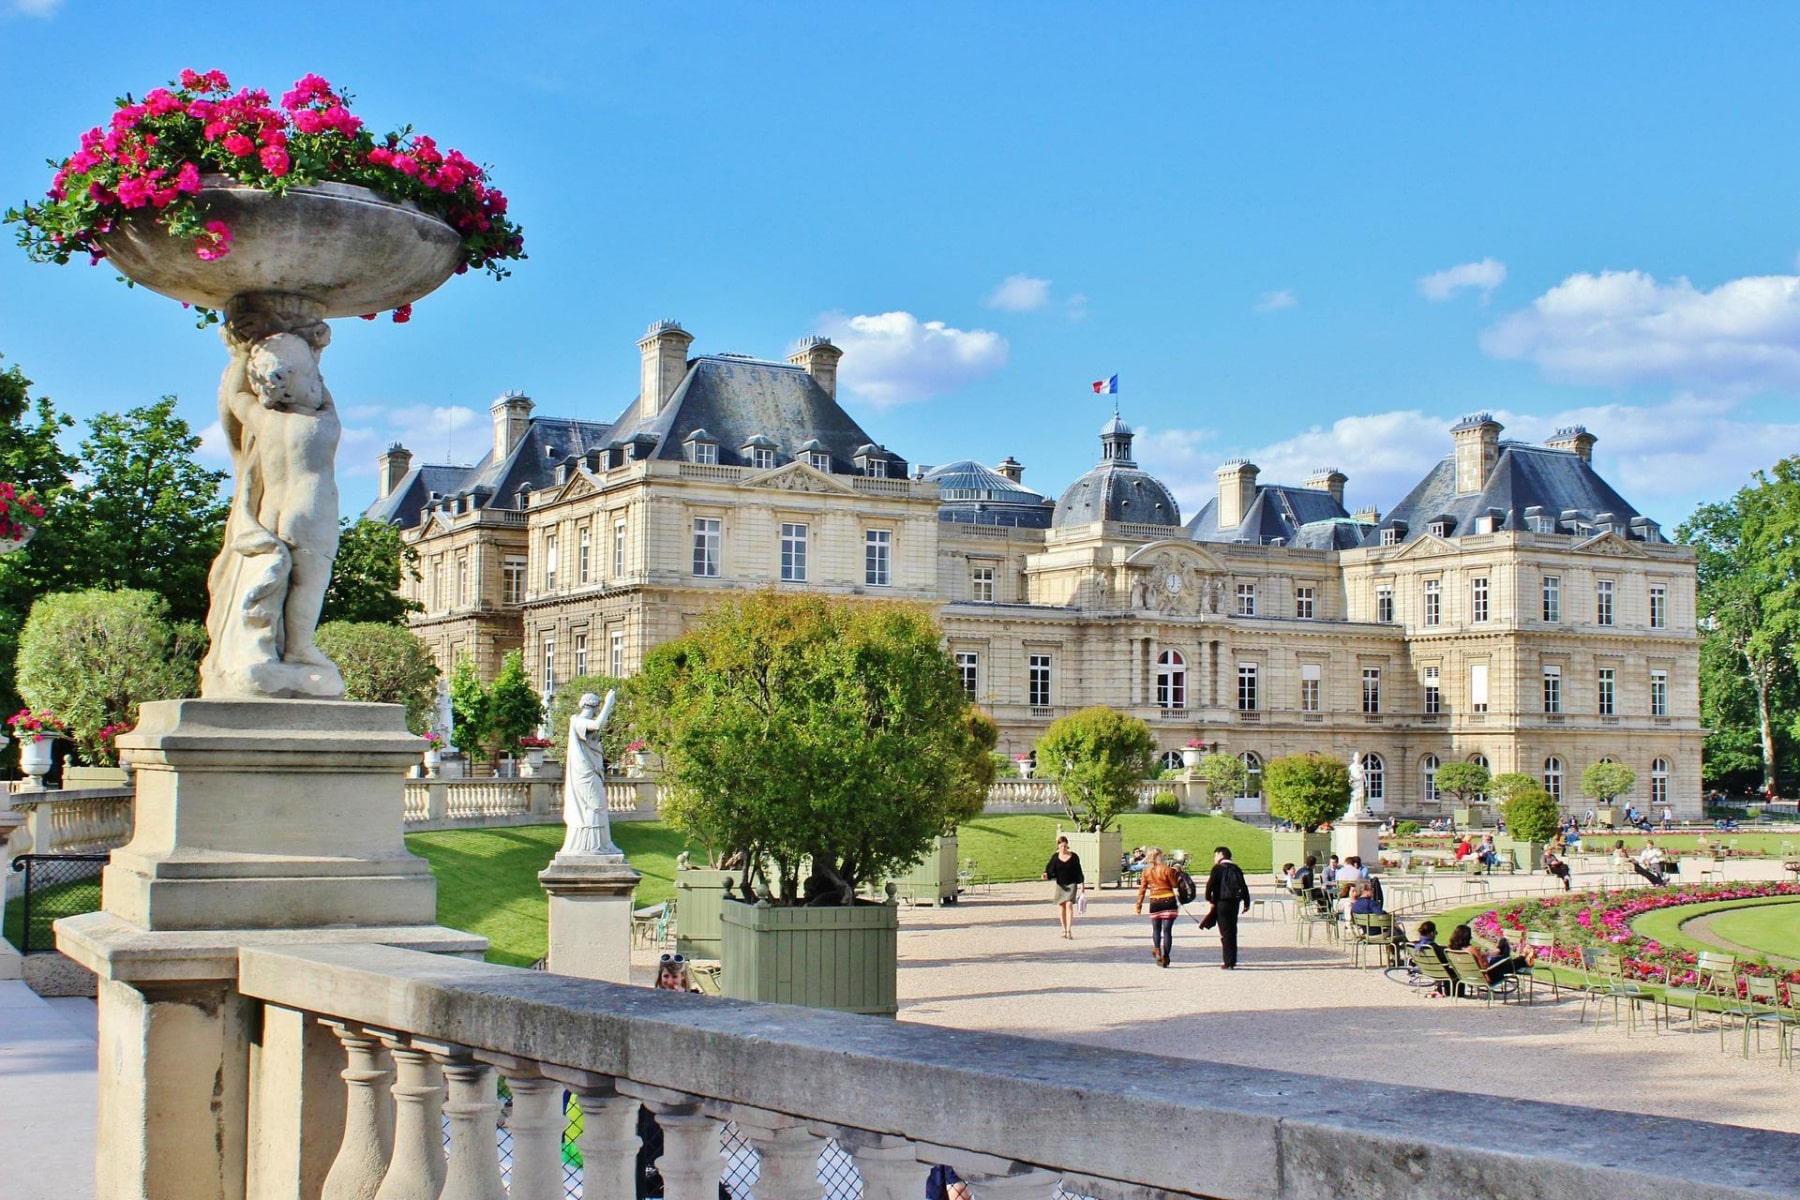 City-tour de Paris, croisière sur la Seine et visite de la Tour Eiffel et  du Louvre – Smartbox